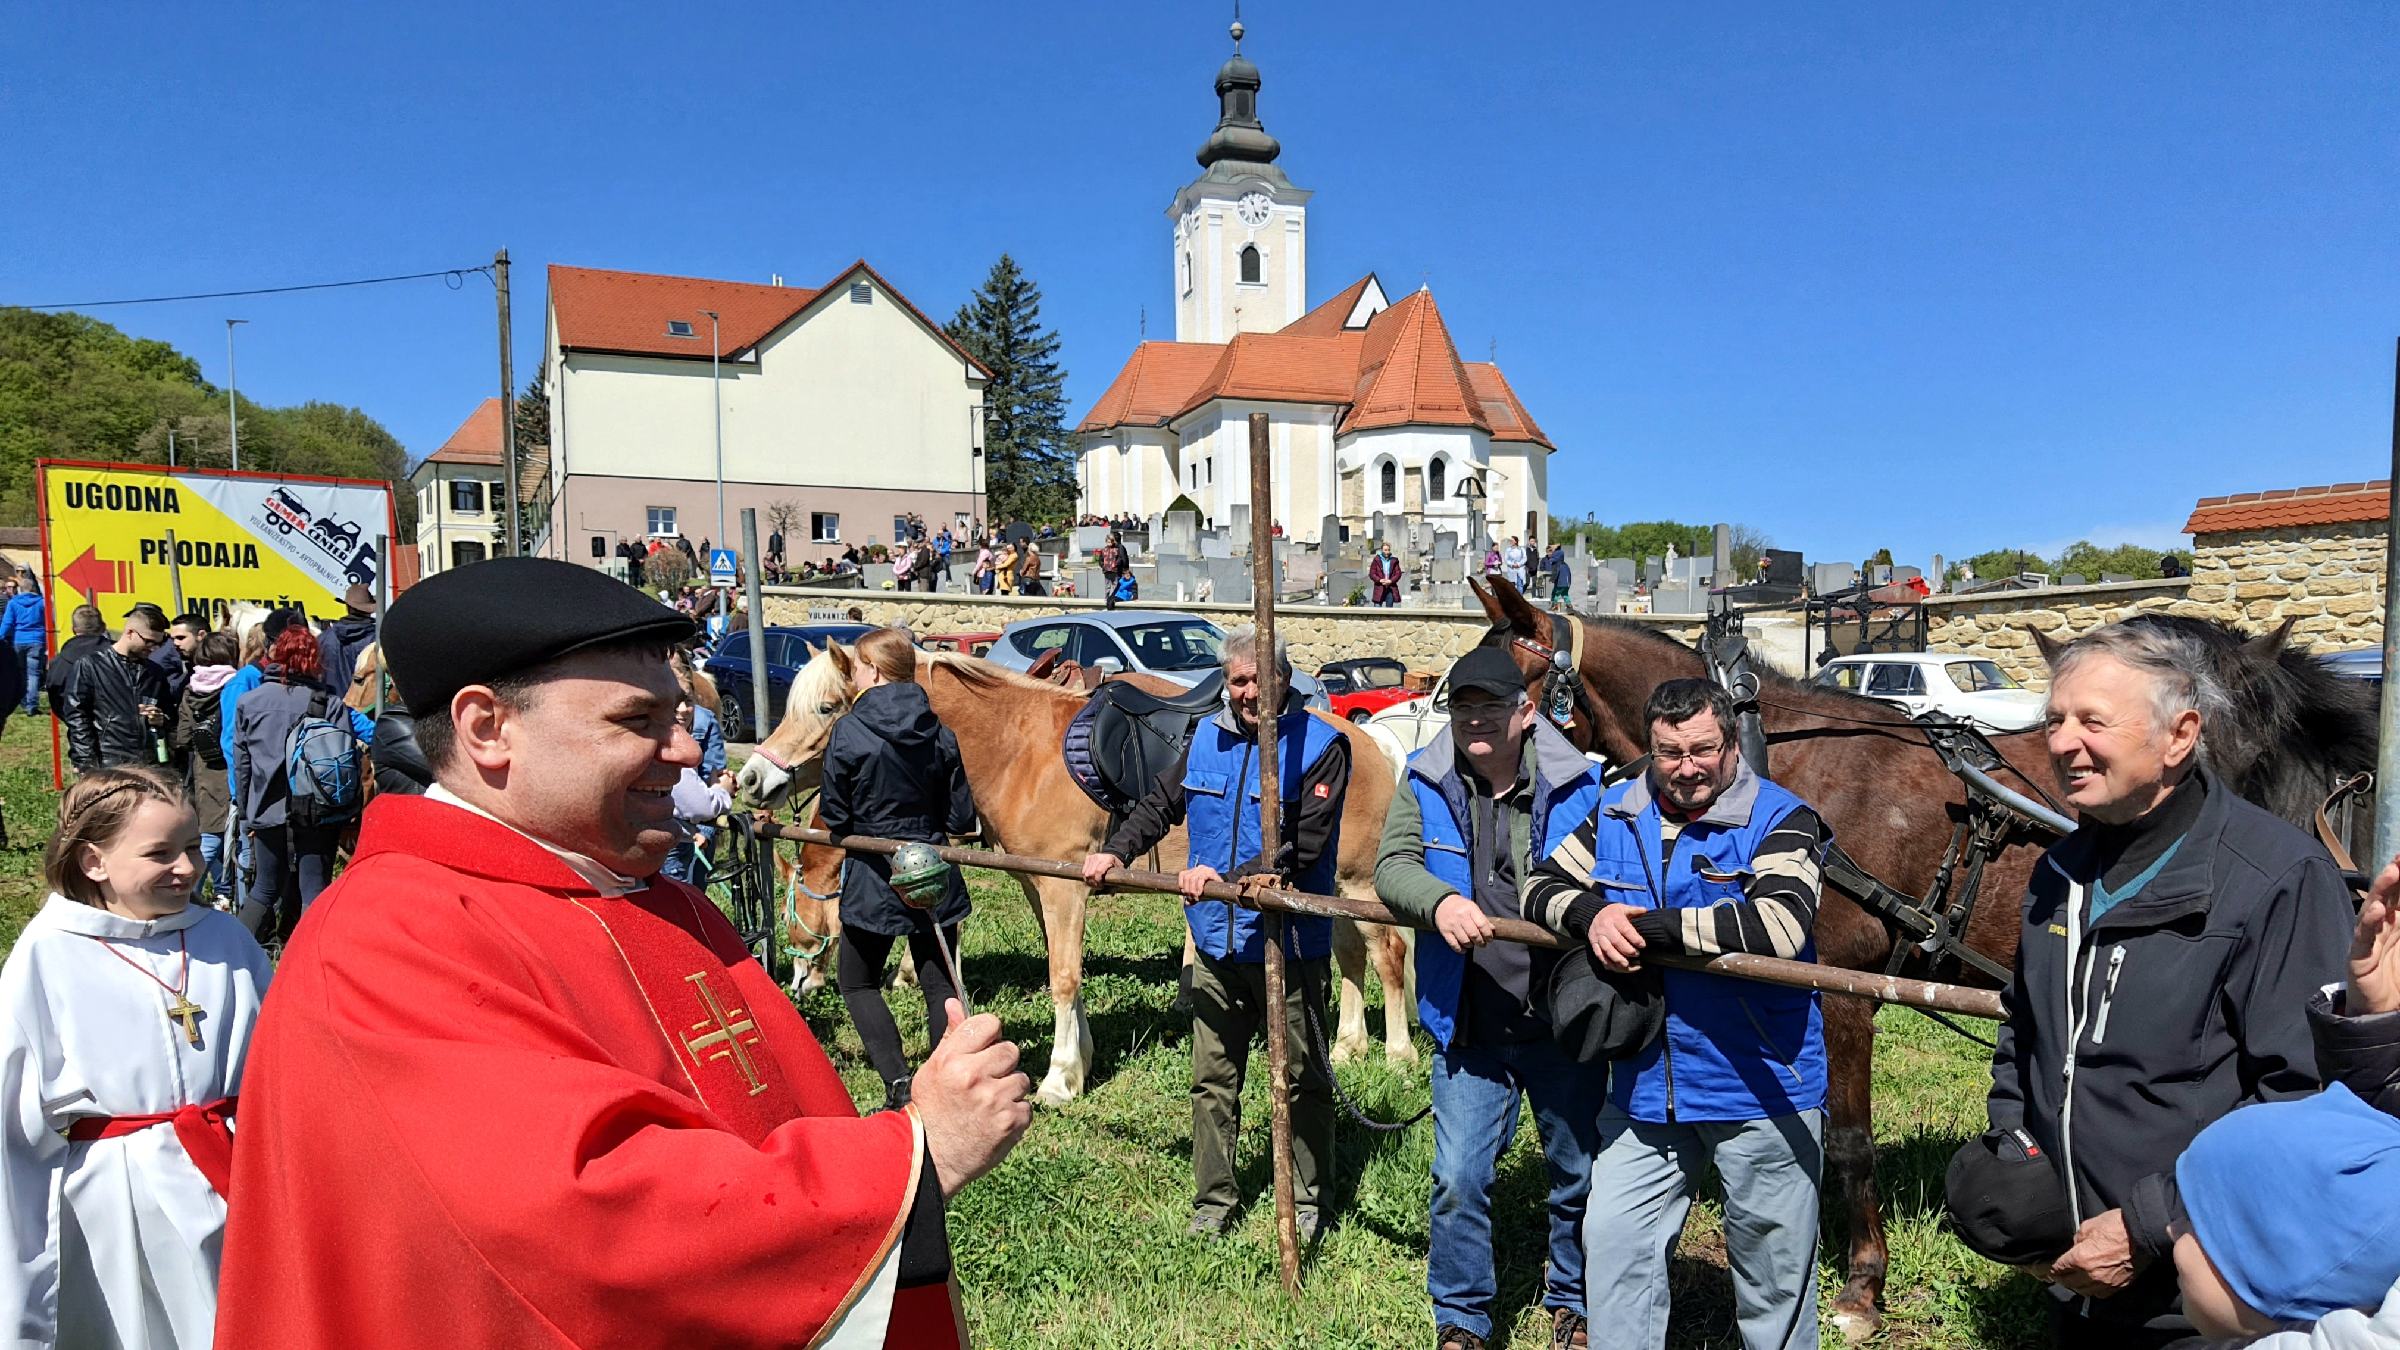 FOTO: Na tradicionalni Jurjevi nedelji blagoslovili več kot 80 konj in konjenikov